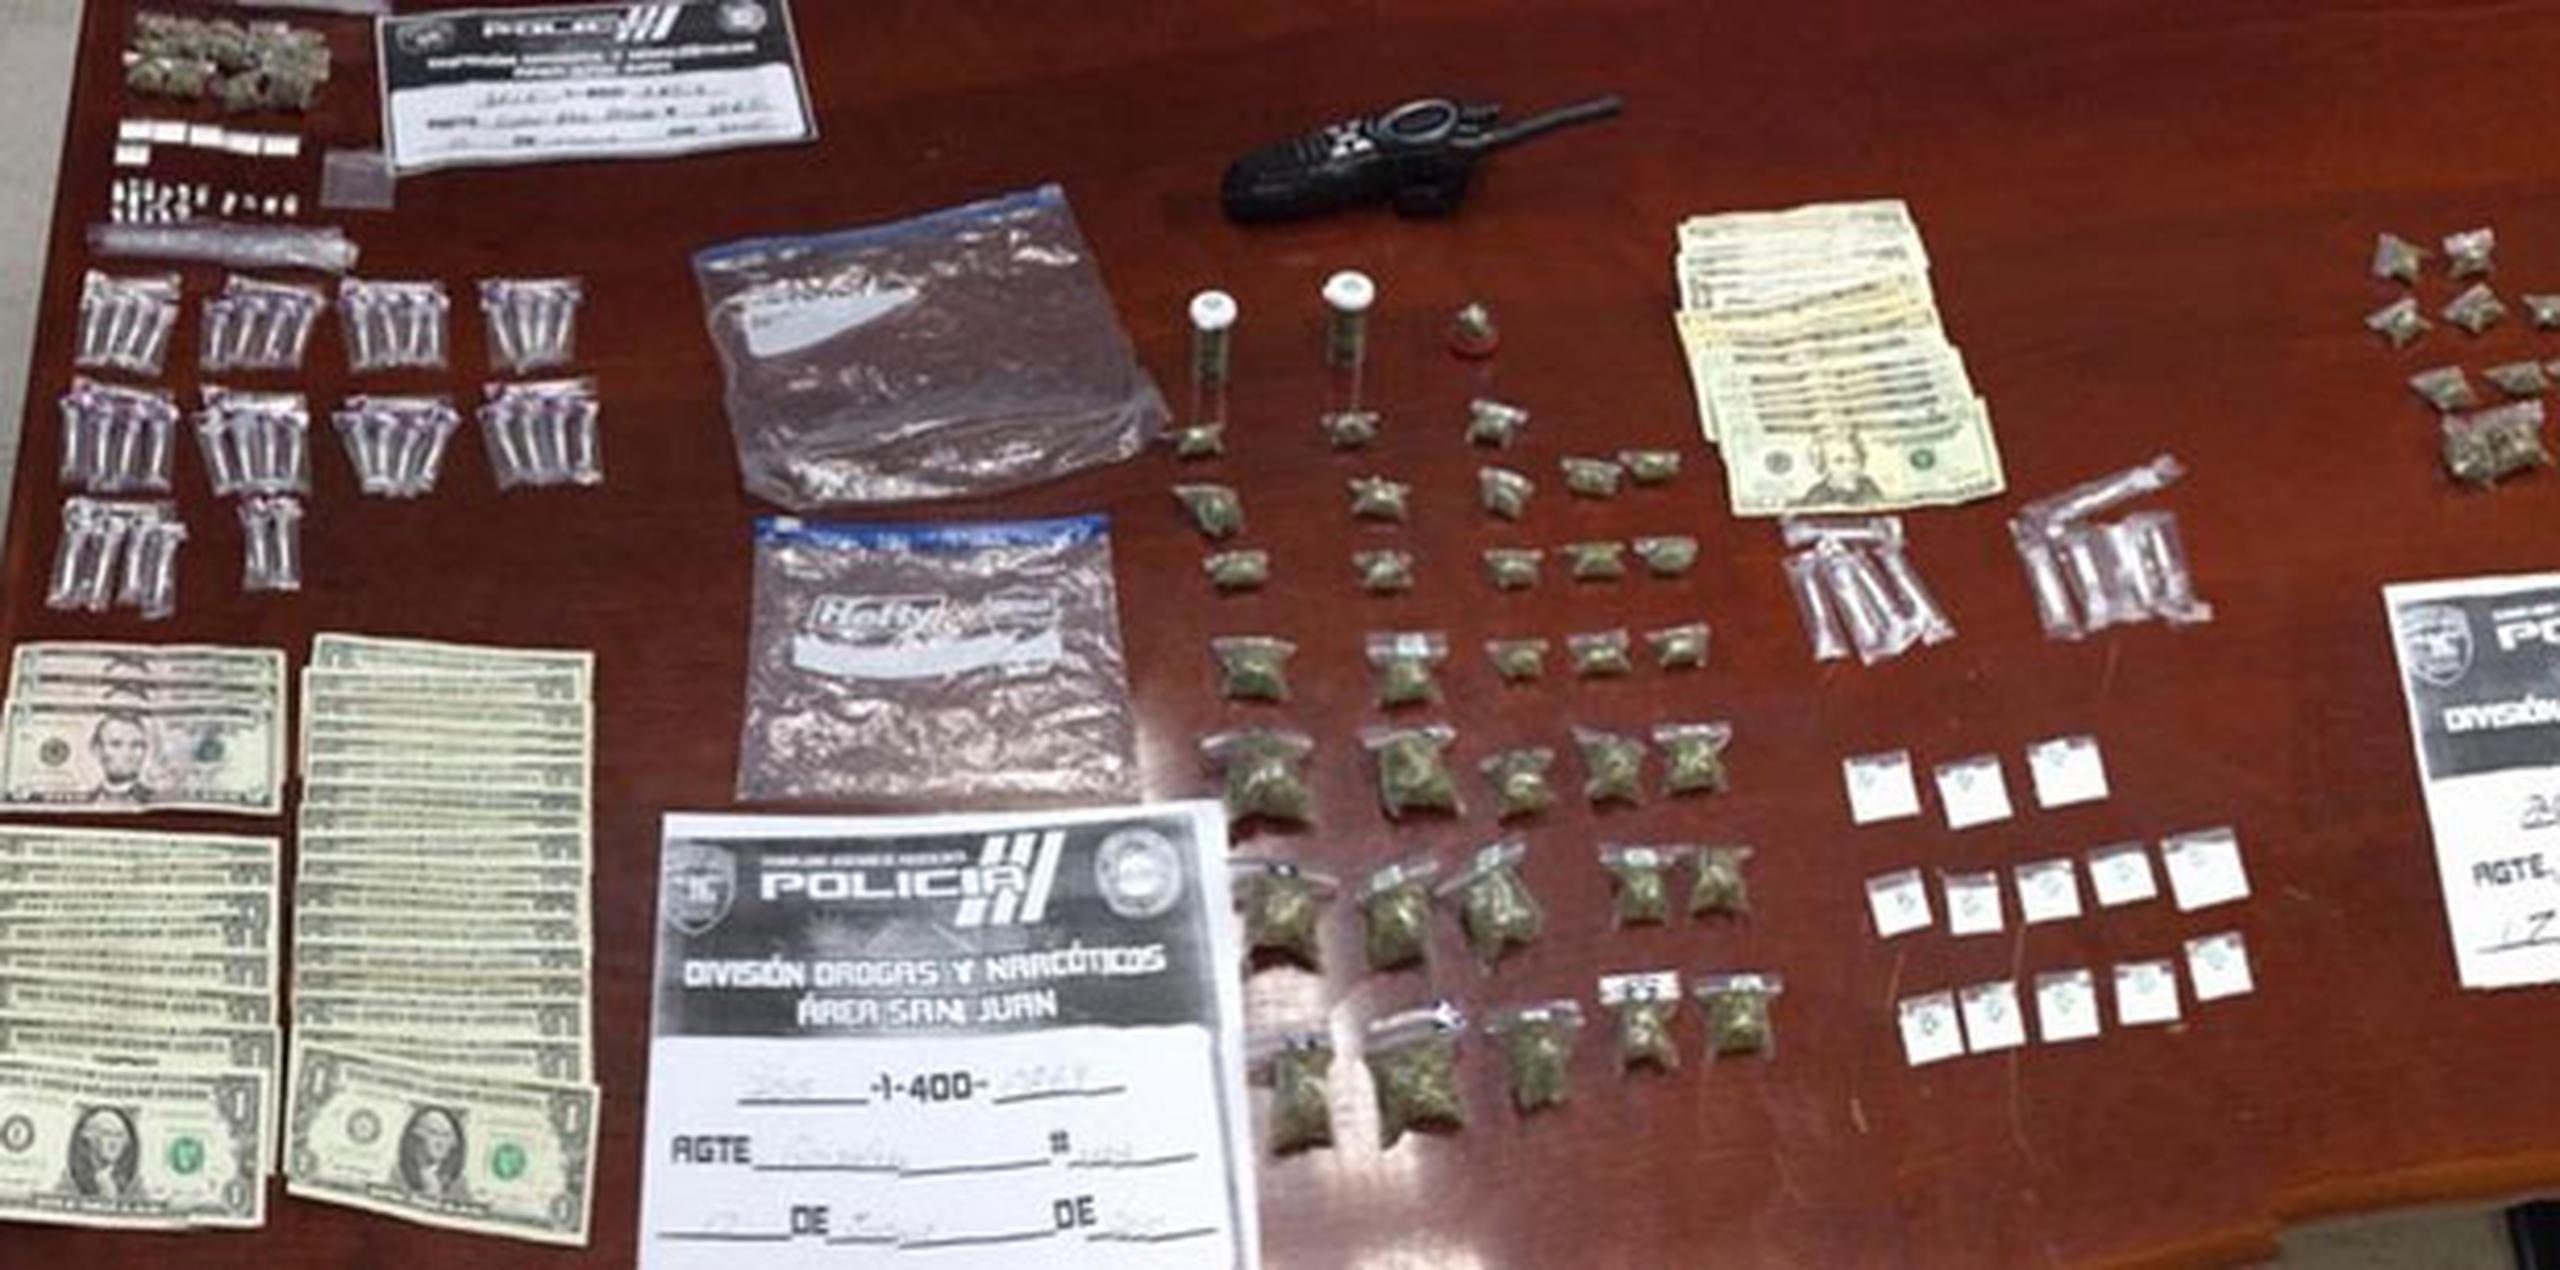 En el residencial Vista Hermosa, en Puerto Nuevo, fue arrestado Gustavo Adolfo Sánchez Vázquez, de 24 años, a quien se le ocuparon 14 bolsitas con marihuana, 21 decks de heroína, 47 cápsulas de crack y $40. (Archivo)